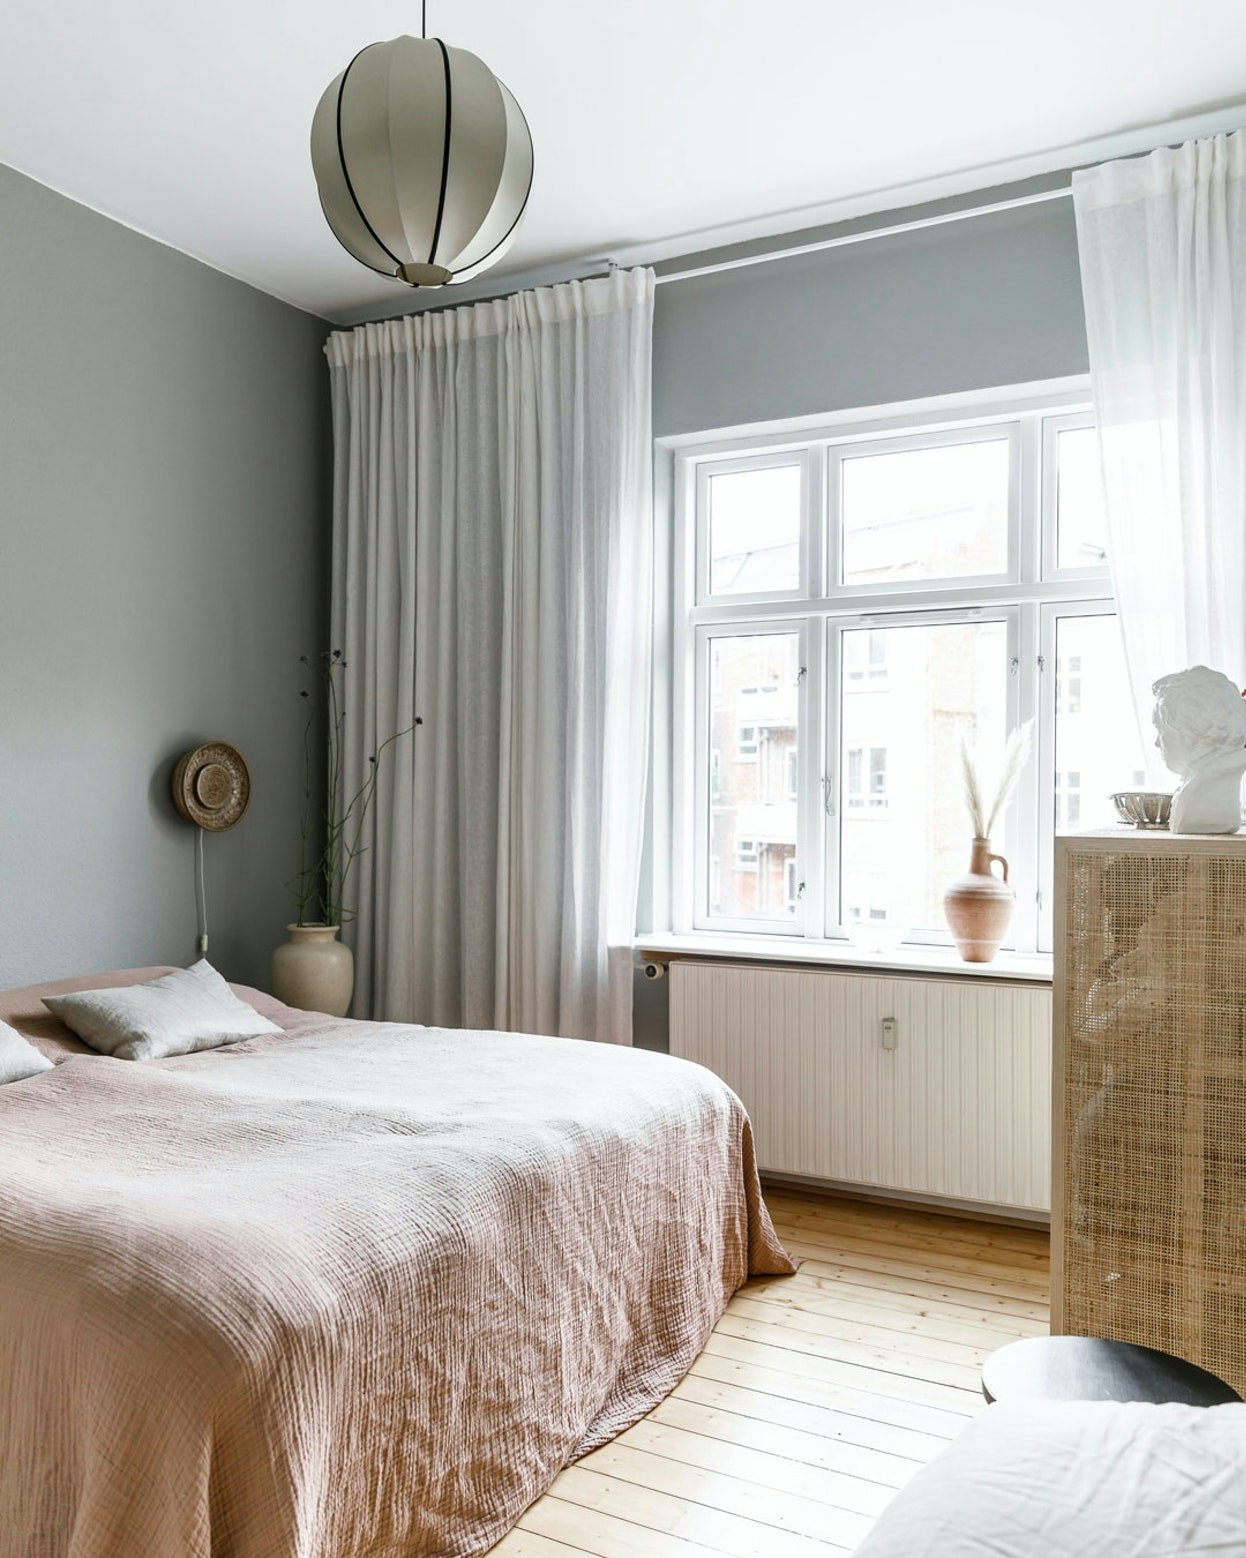 Lange gardiner og let sengetæppe skaber en luksuriøs følelse